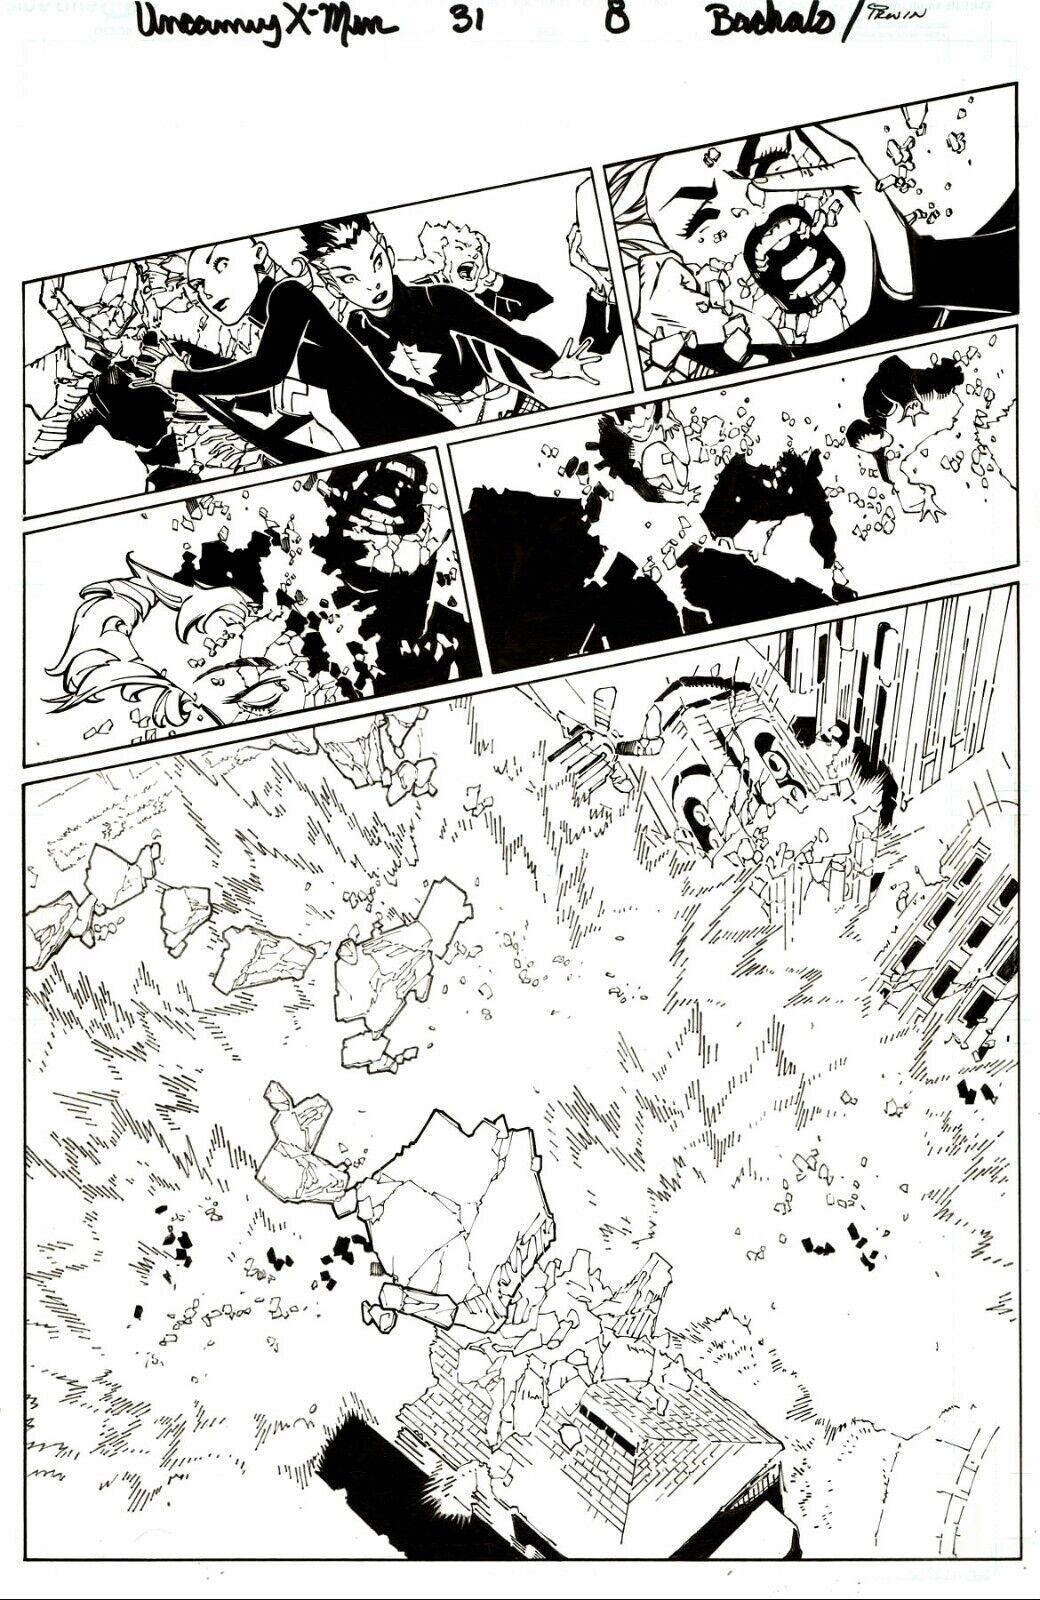 Uncanny X-Men #31 Page 8 Original Art Splash Storm & New X-Men By Chris Bachalo